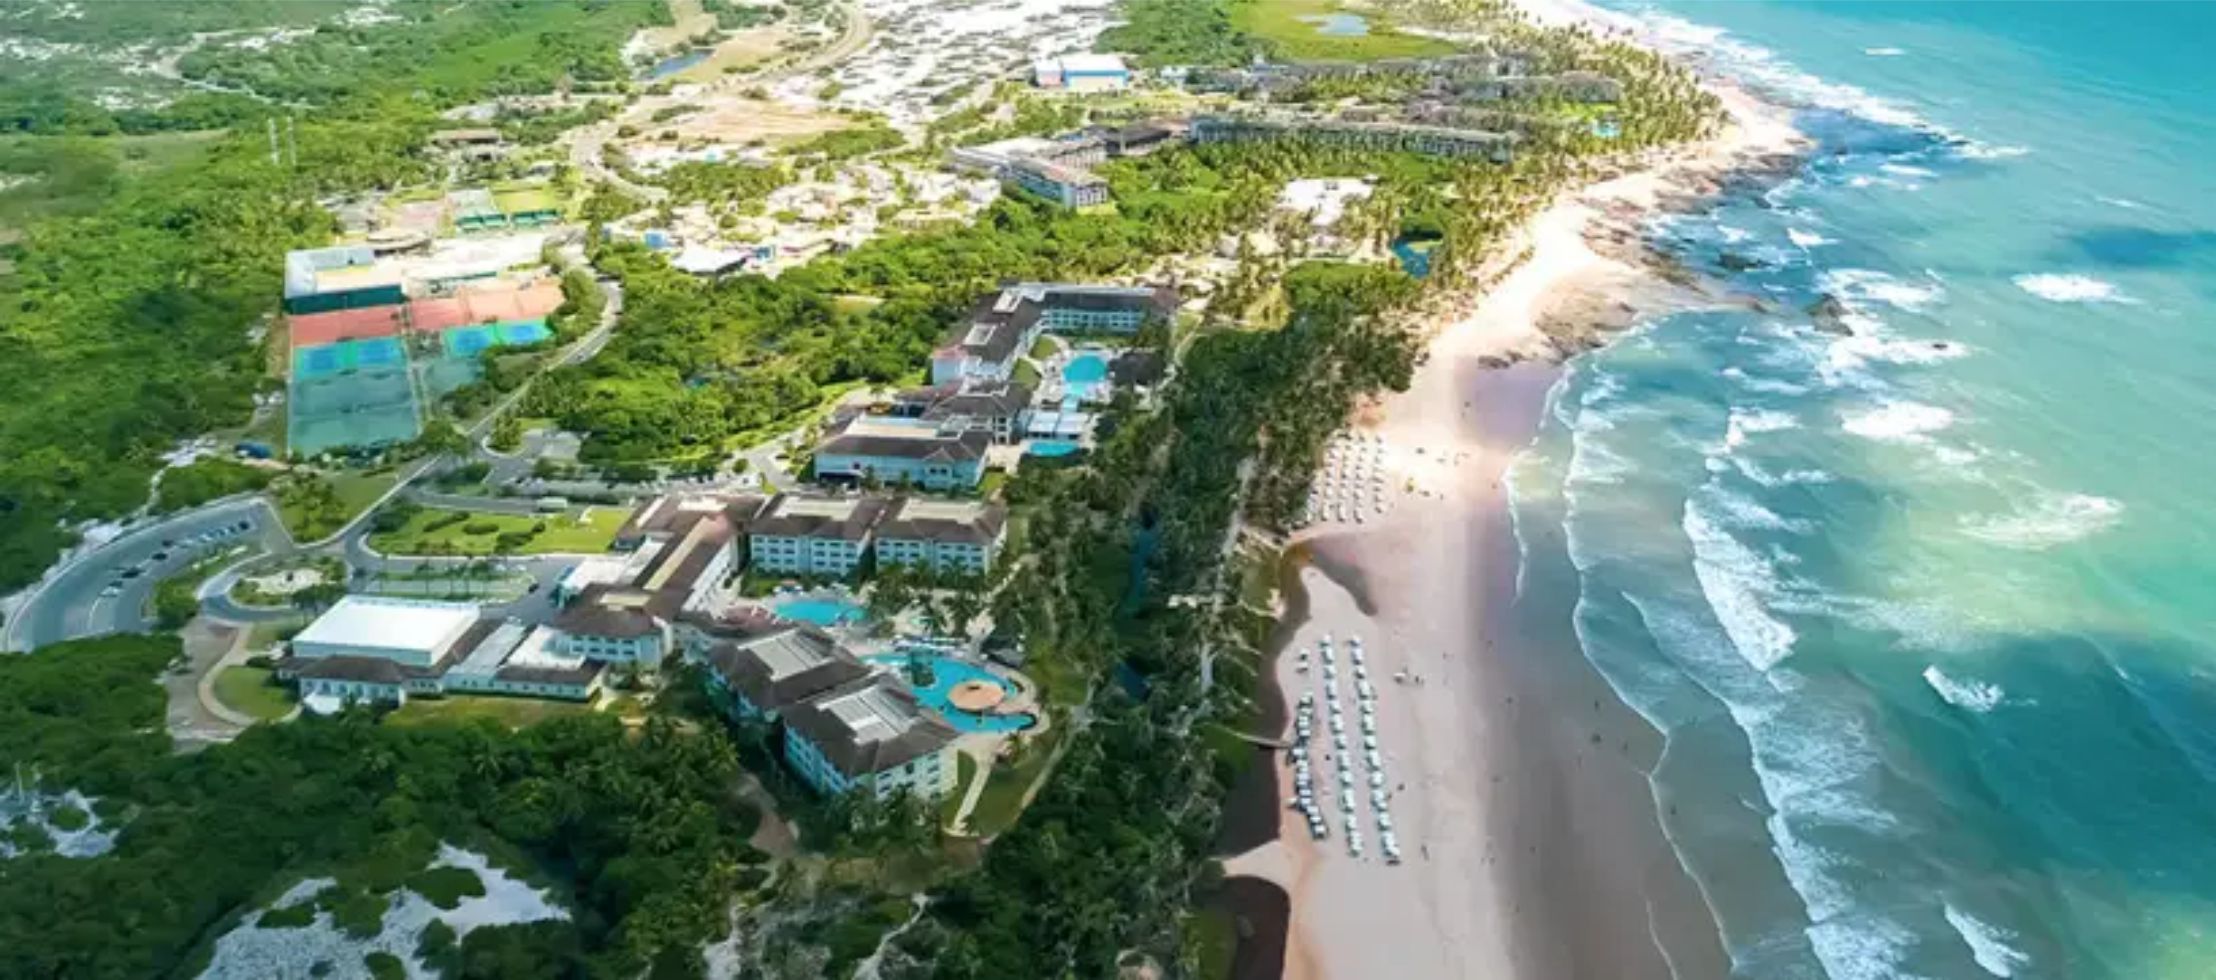 Resorts all inclusive na Costa do Sauípe: desconto de até 25% em promoção da 123milhas | Imagem aérea da Costa do Sauípe | Conexão123